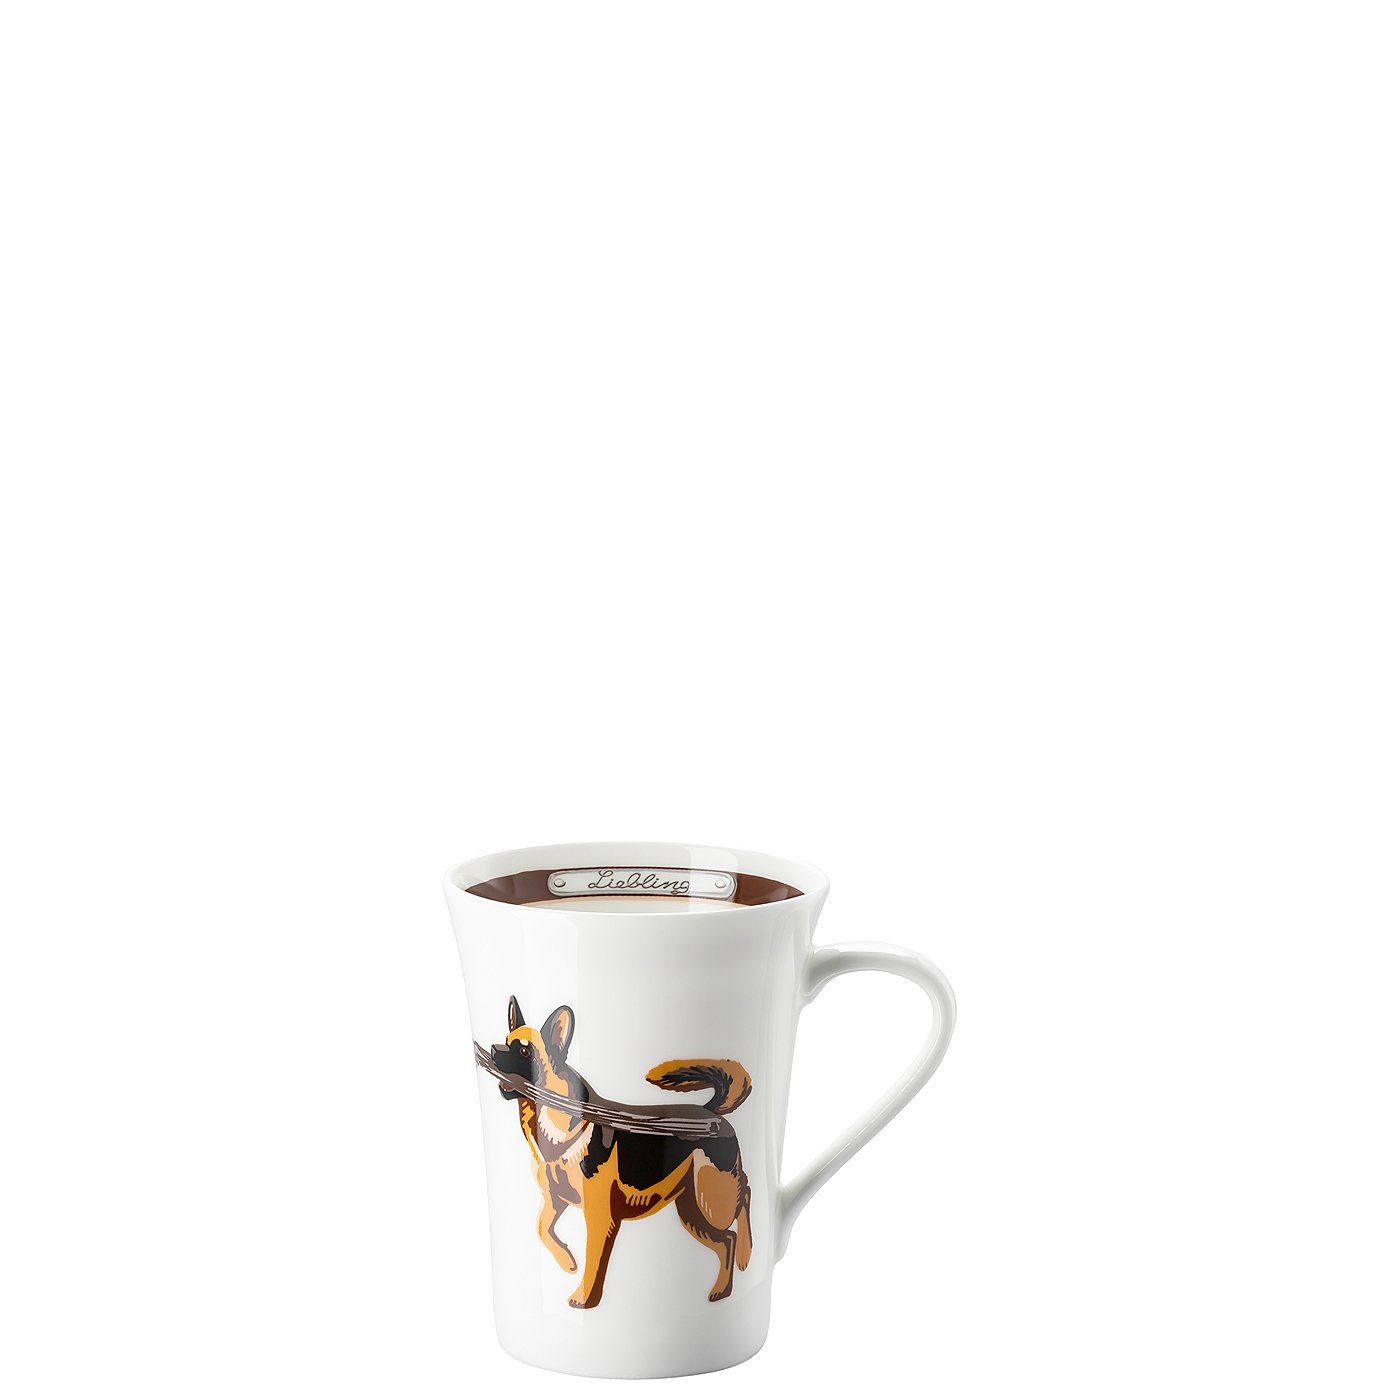 Fine My Mug Becher Hutschenreuther China-Porzellan Collection mit Henkel, Becher Schäferhund Deutscher